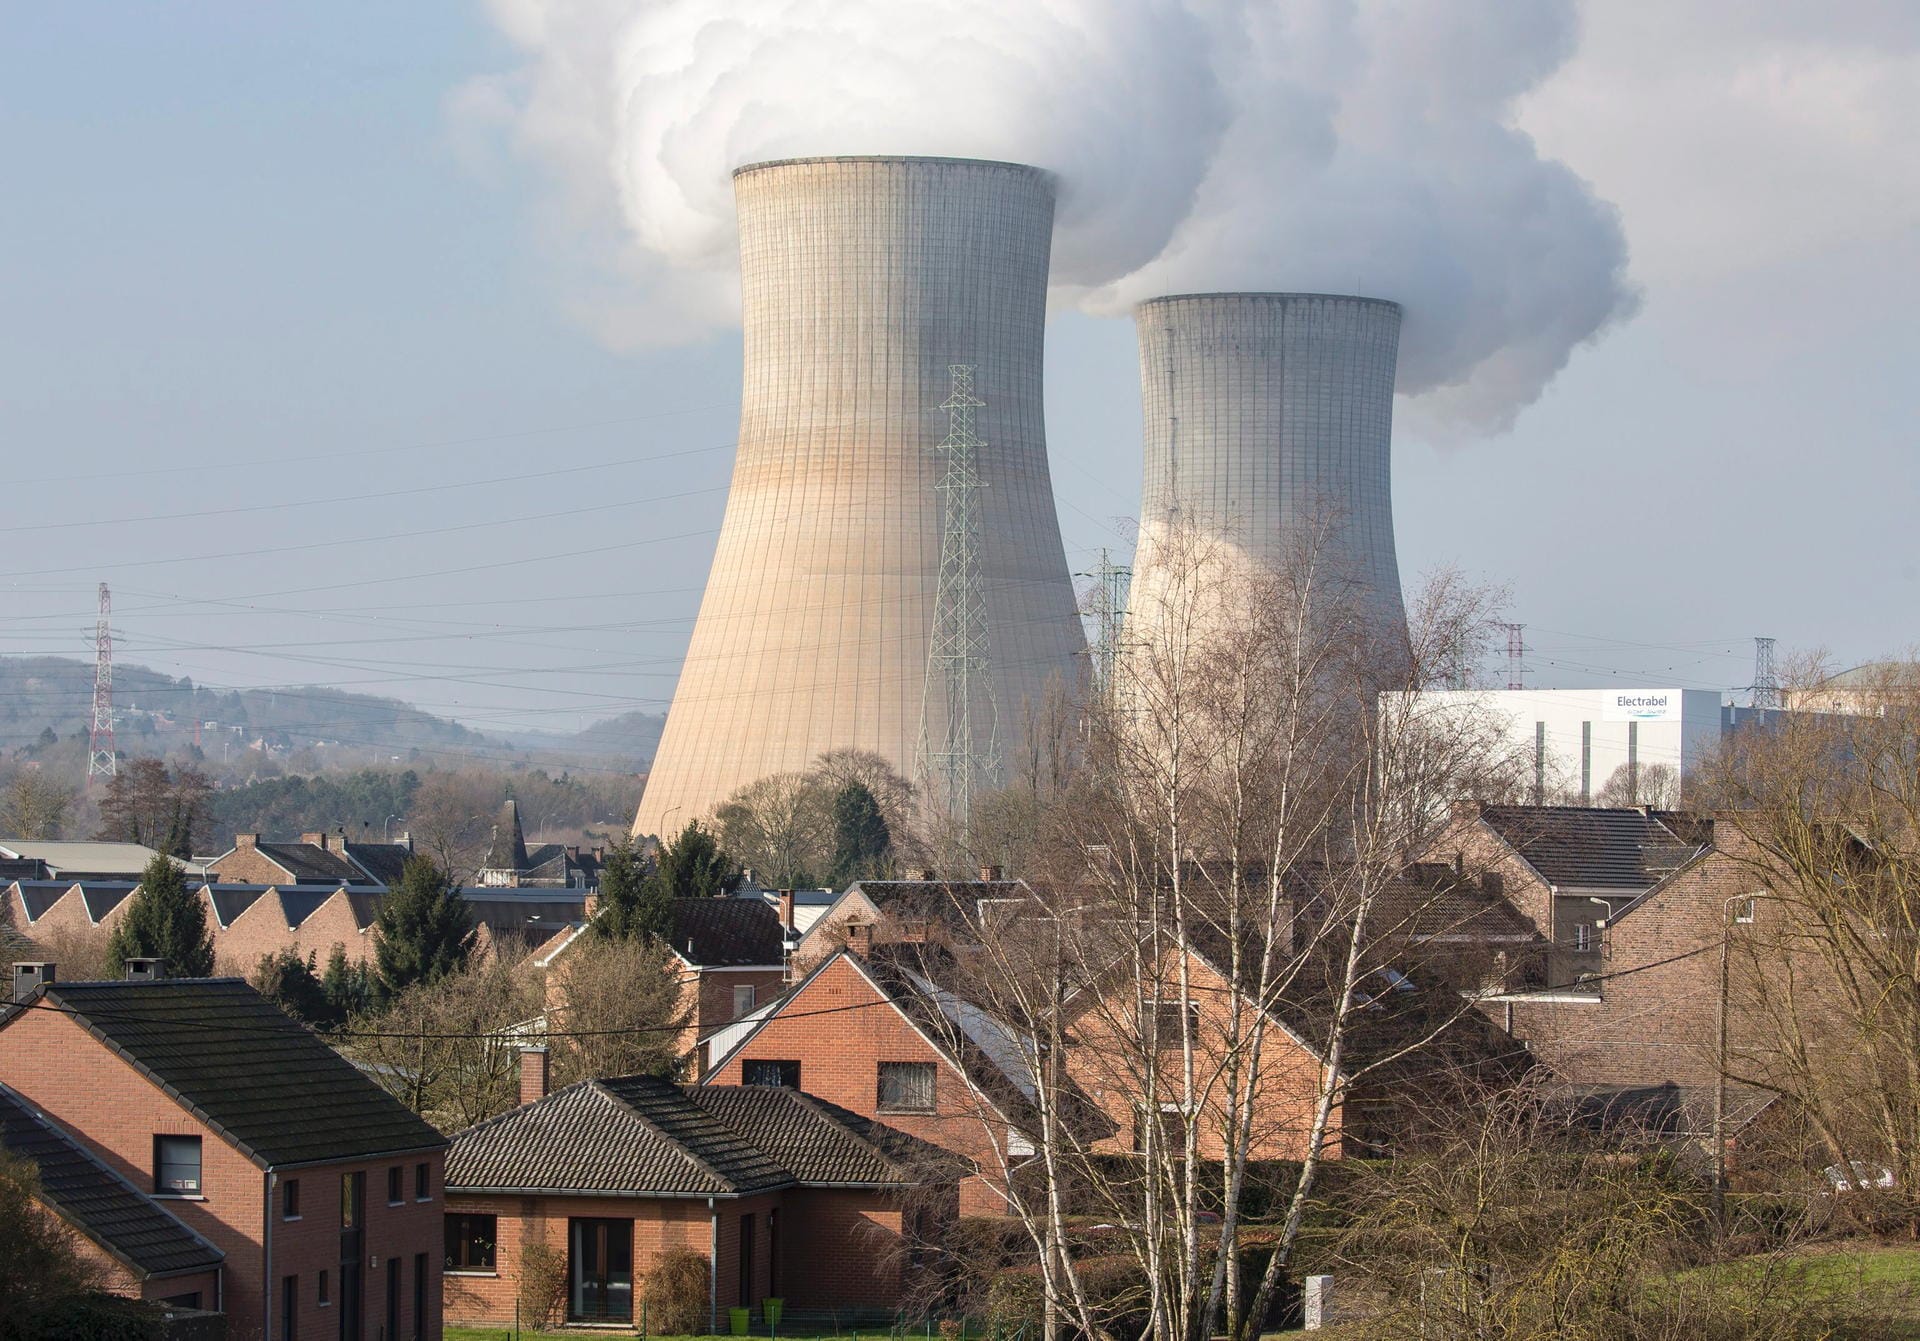 Das Atomkraftwerk Tihange, 70 Kilometer von Aachen entfernt, wird nach den Anschlägen in Brüssel evakuiert.